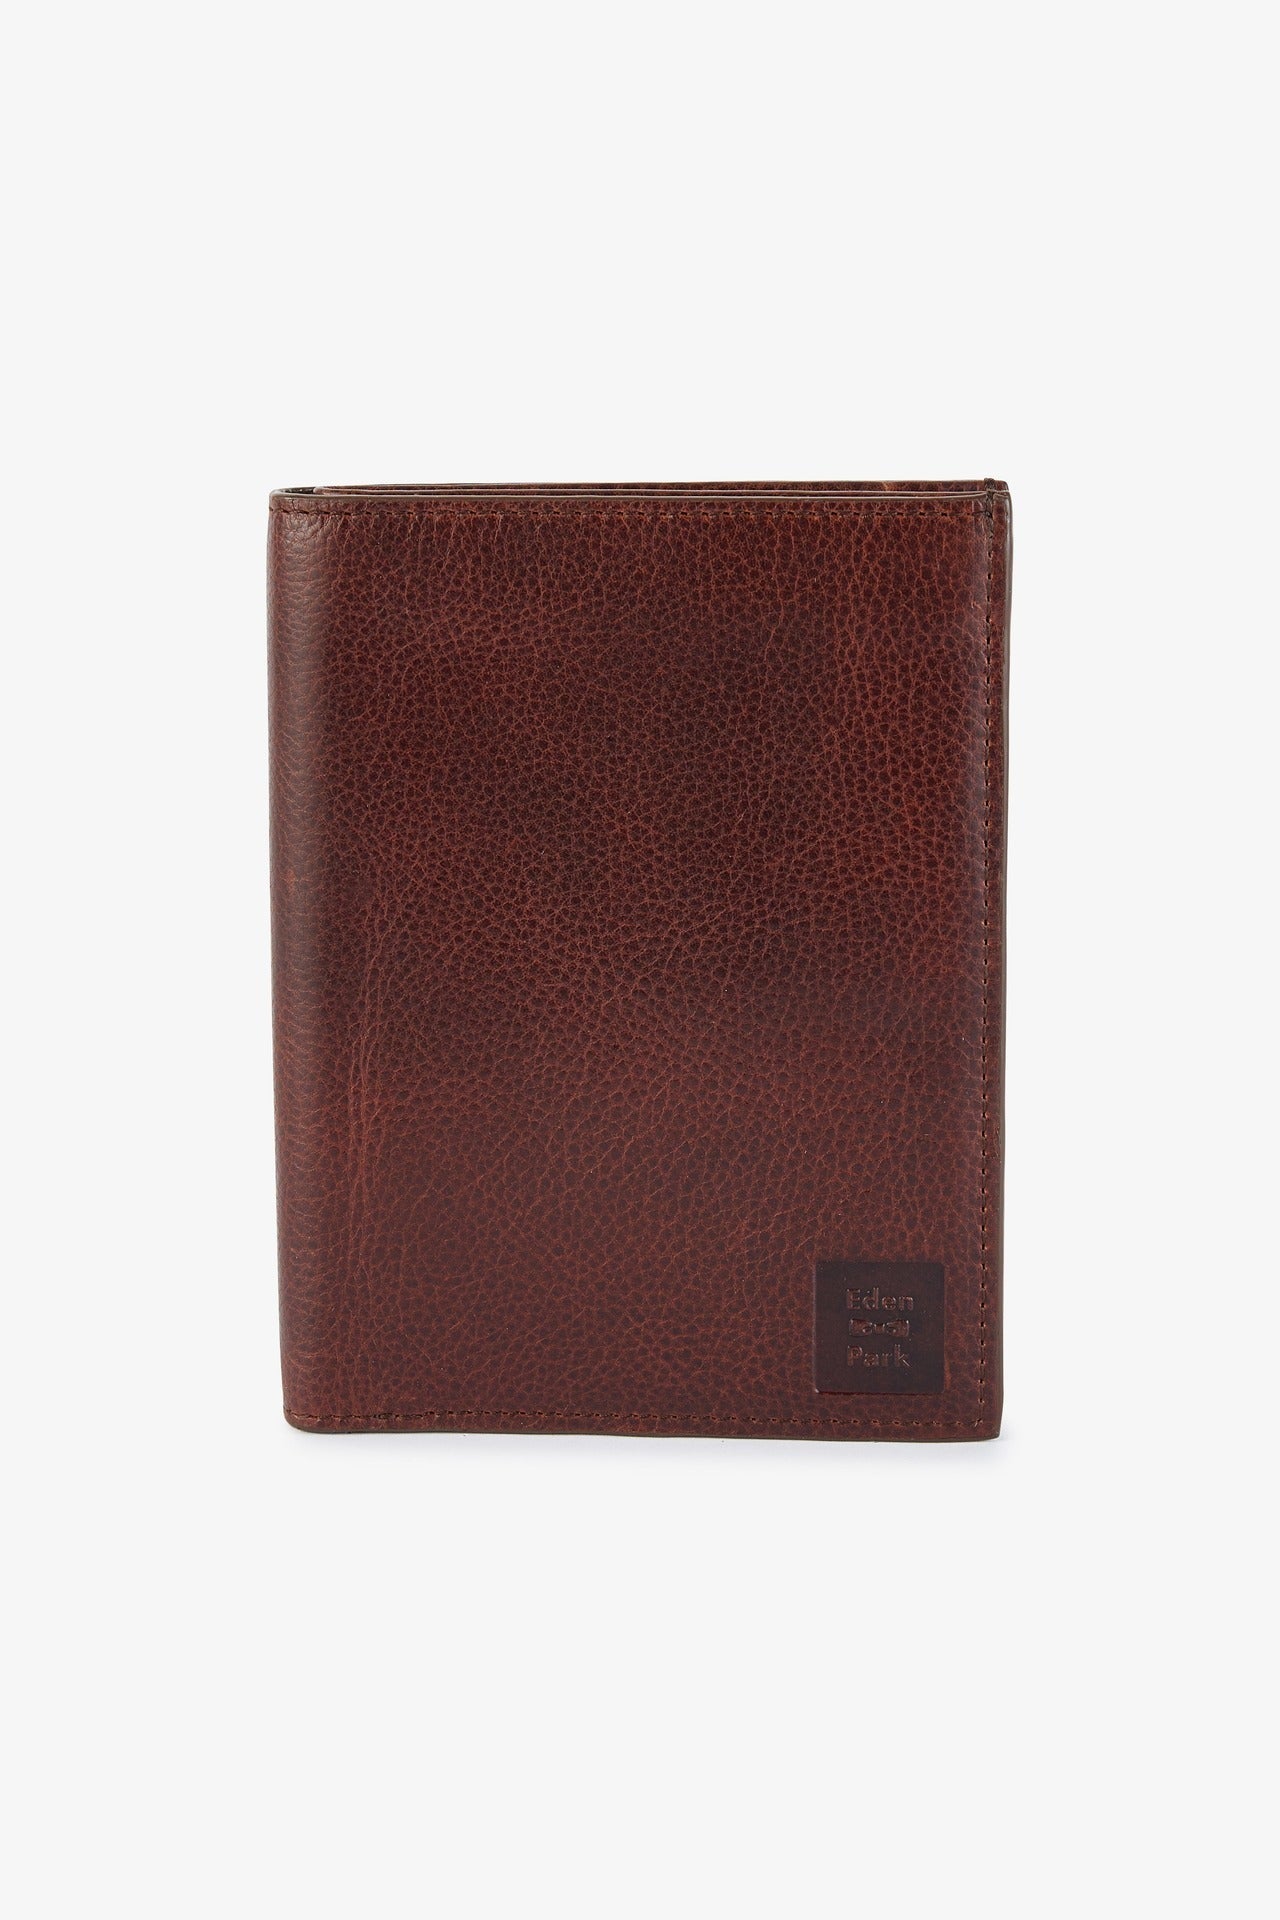 Porte feuille passeport en cuir marron foncé - Image 1